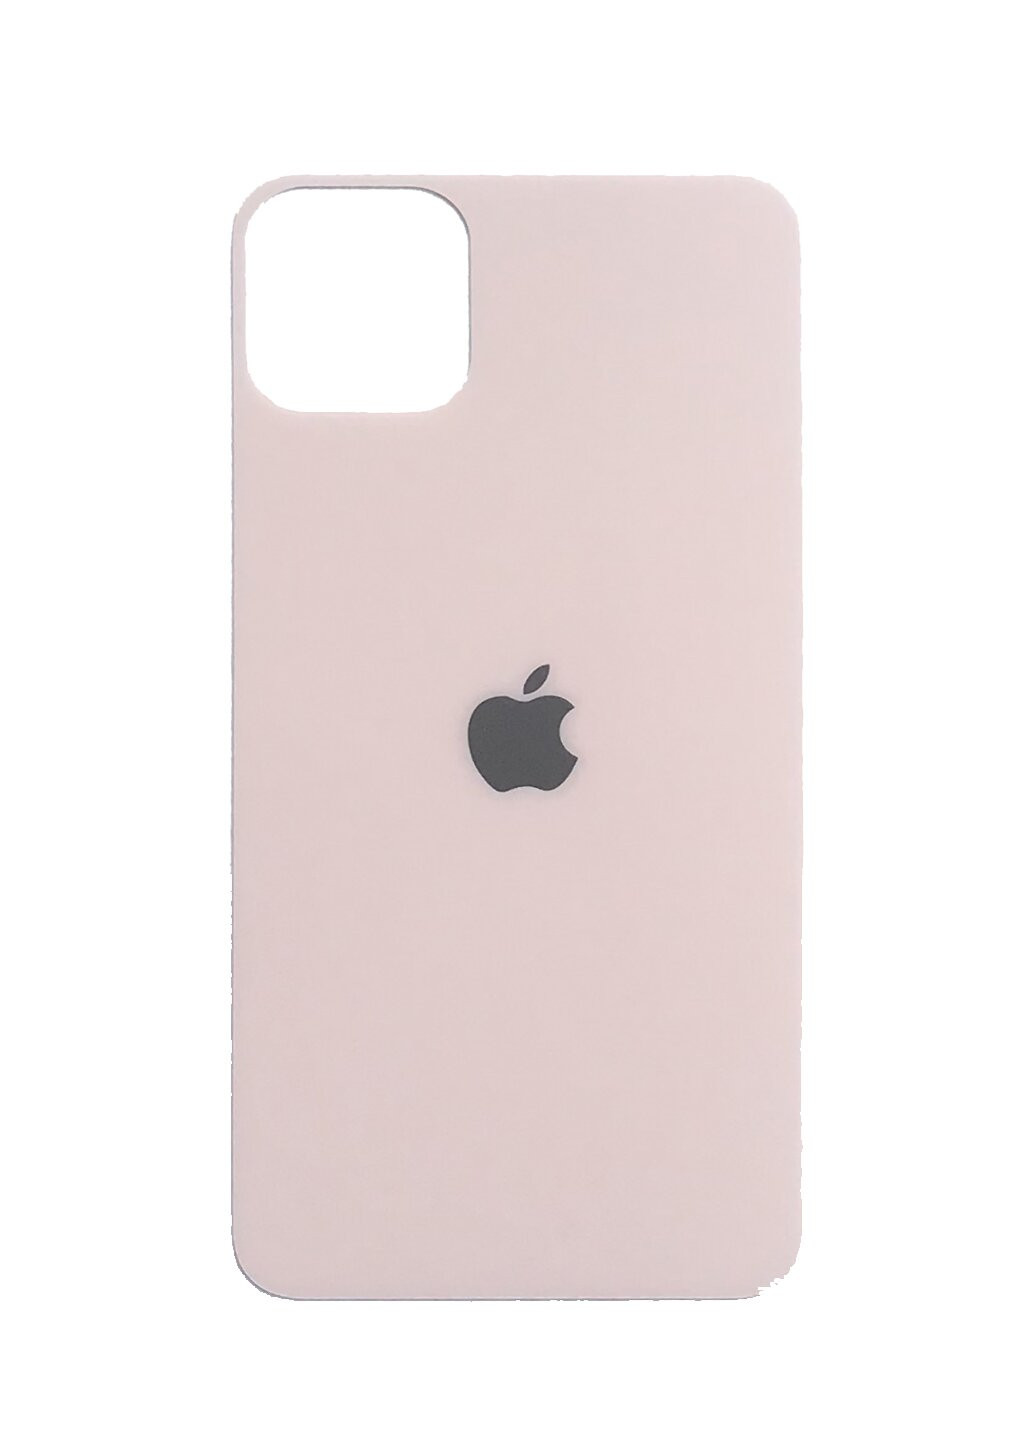 Стекло защитное на заднюю панель цветное матовое для iPhone 11 Pro Gold CAA (220514050)